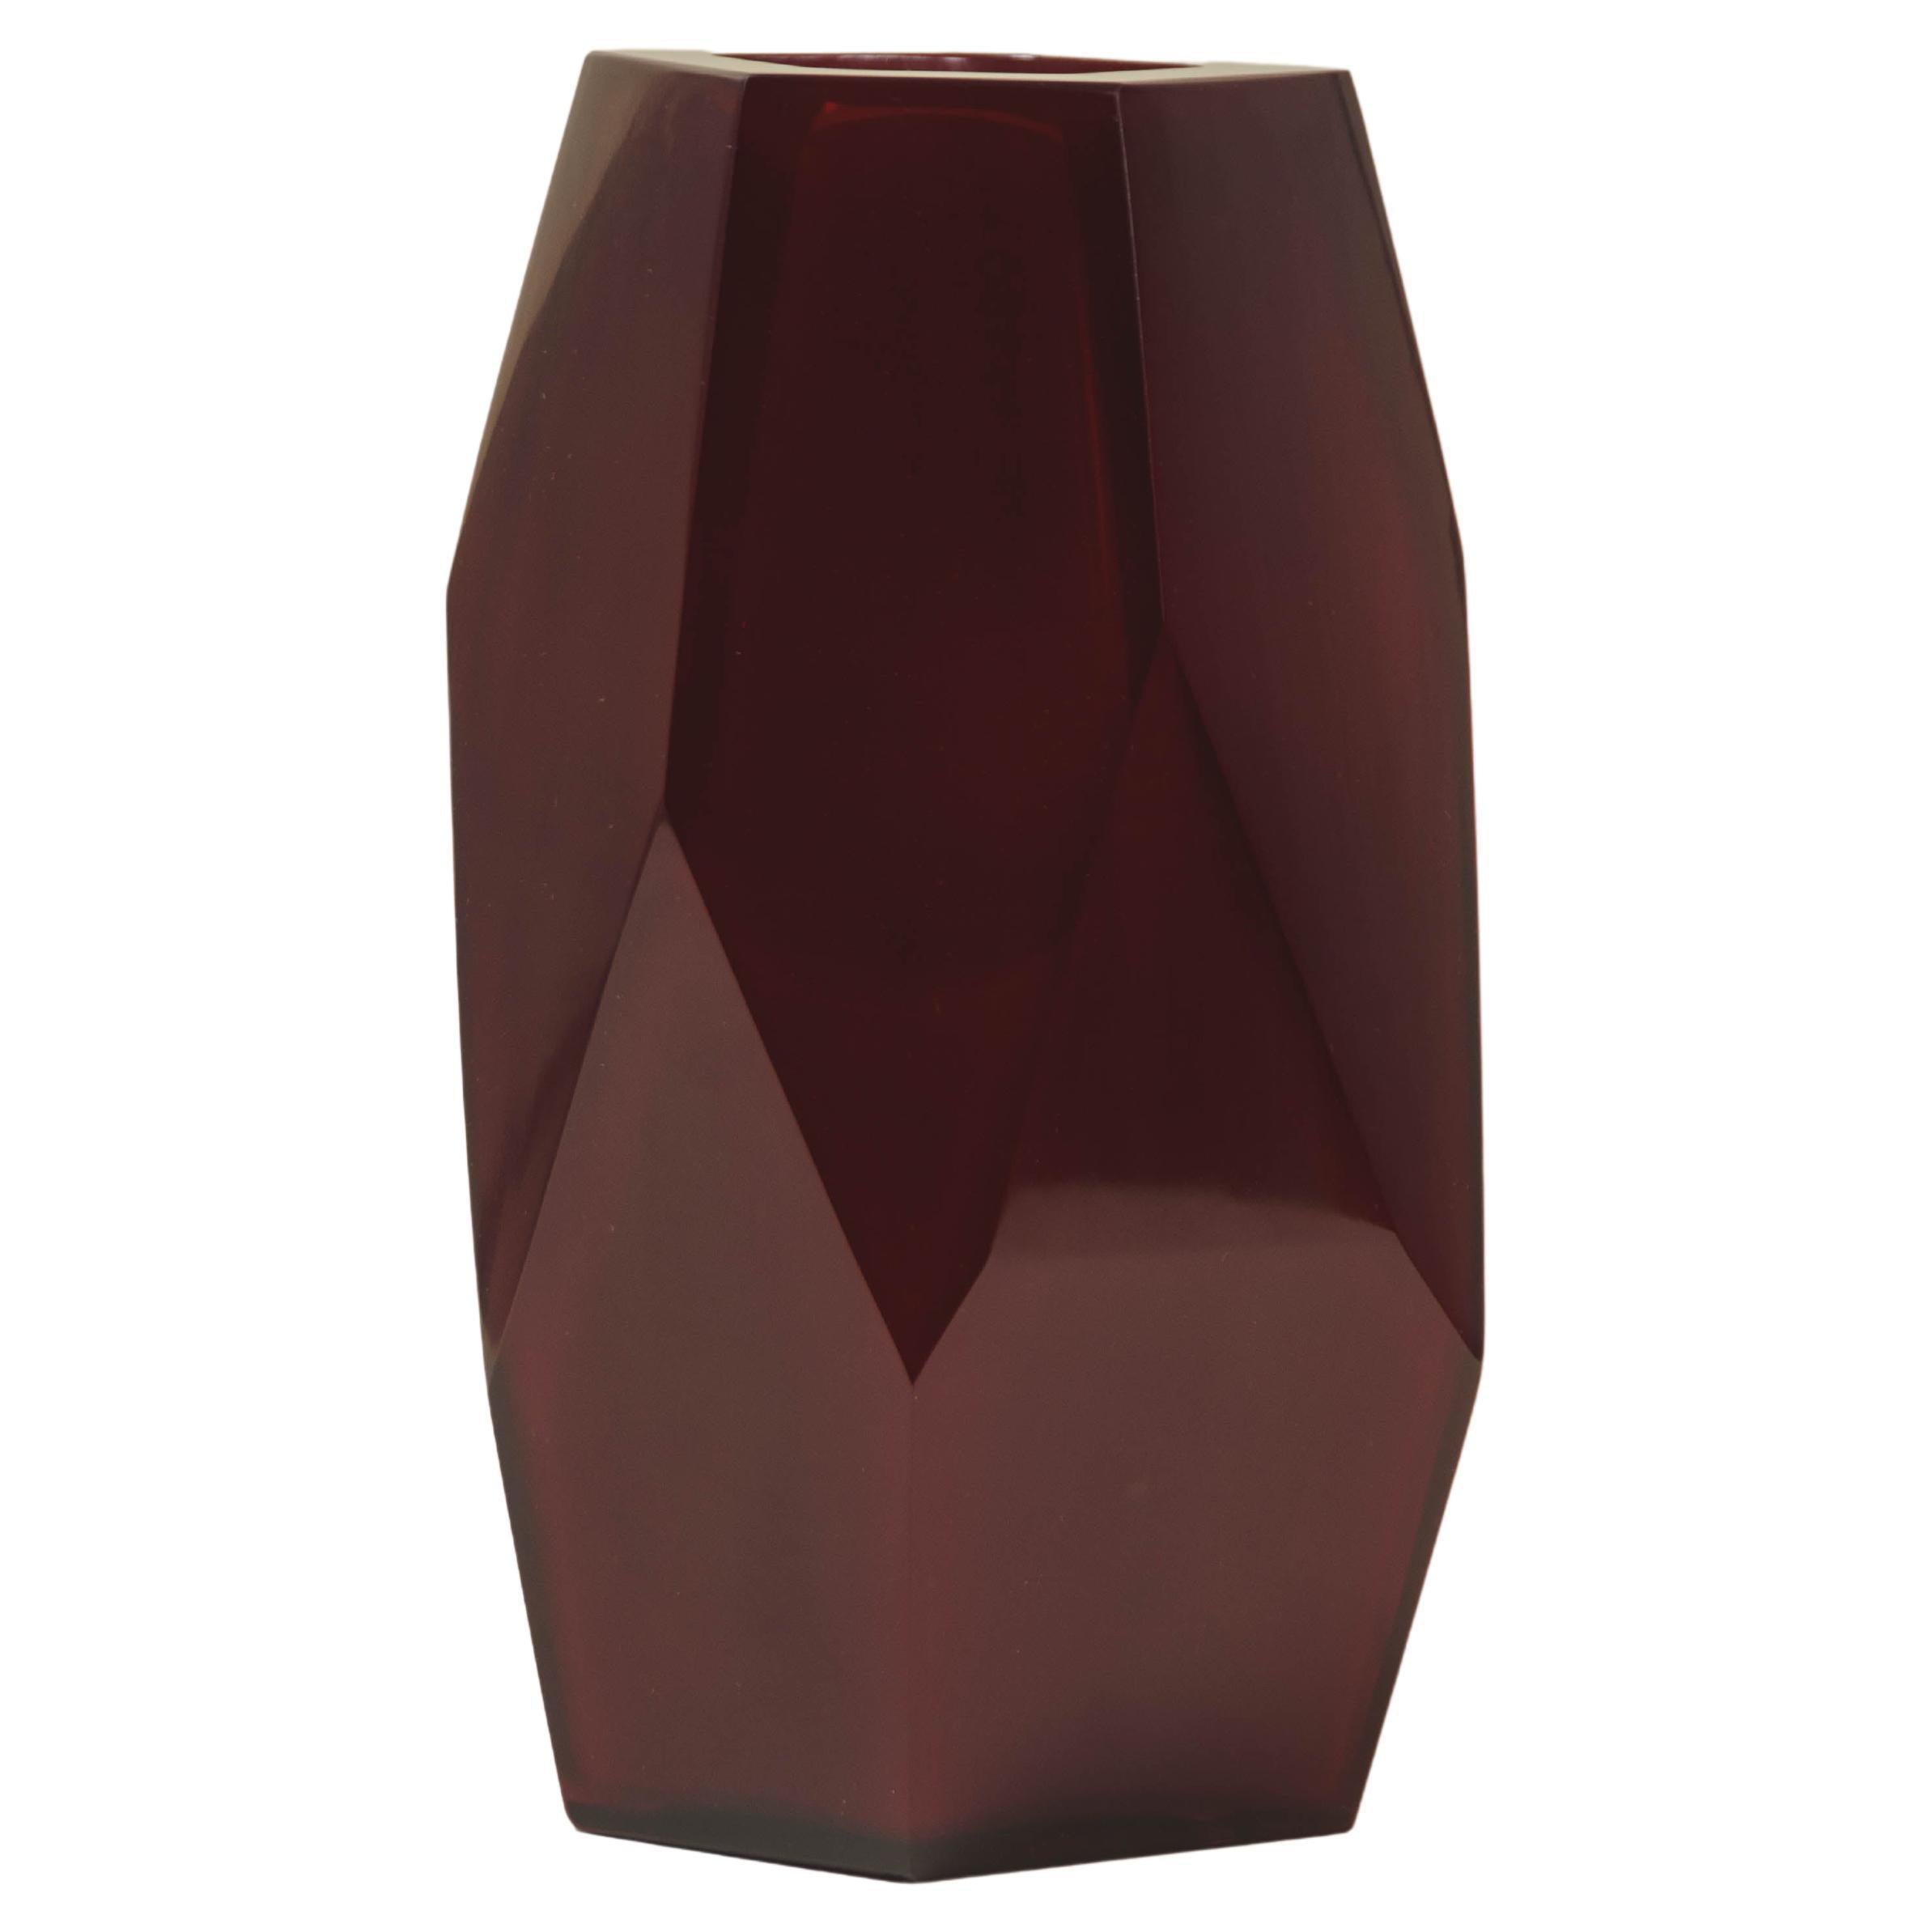 Zeitgenössische Grand Facet-Vase aus Himbeerfarbenem Peking-Glas von Robert Kuo